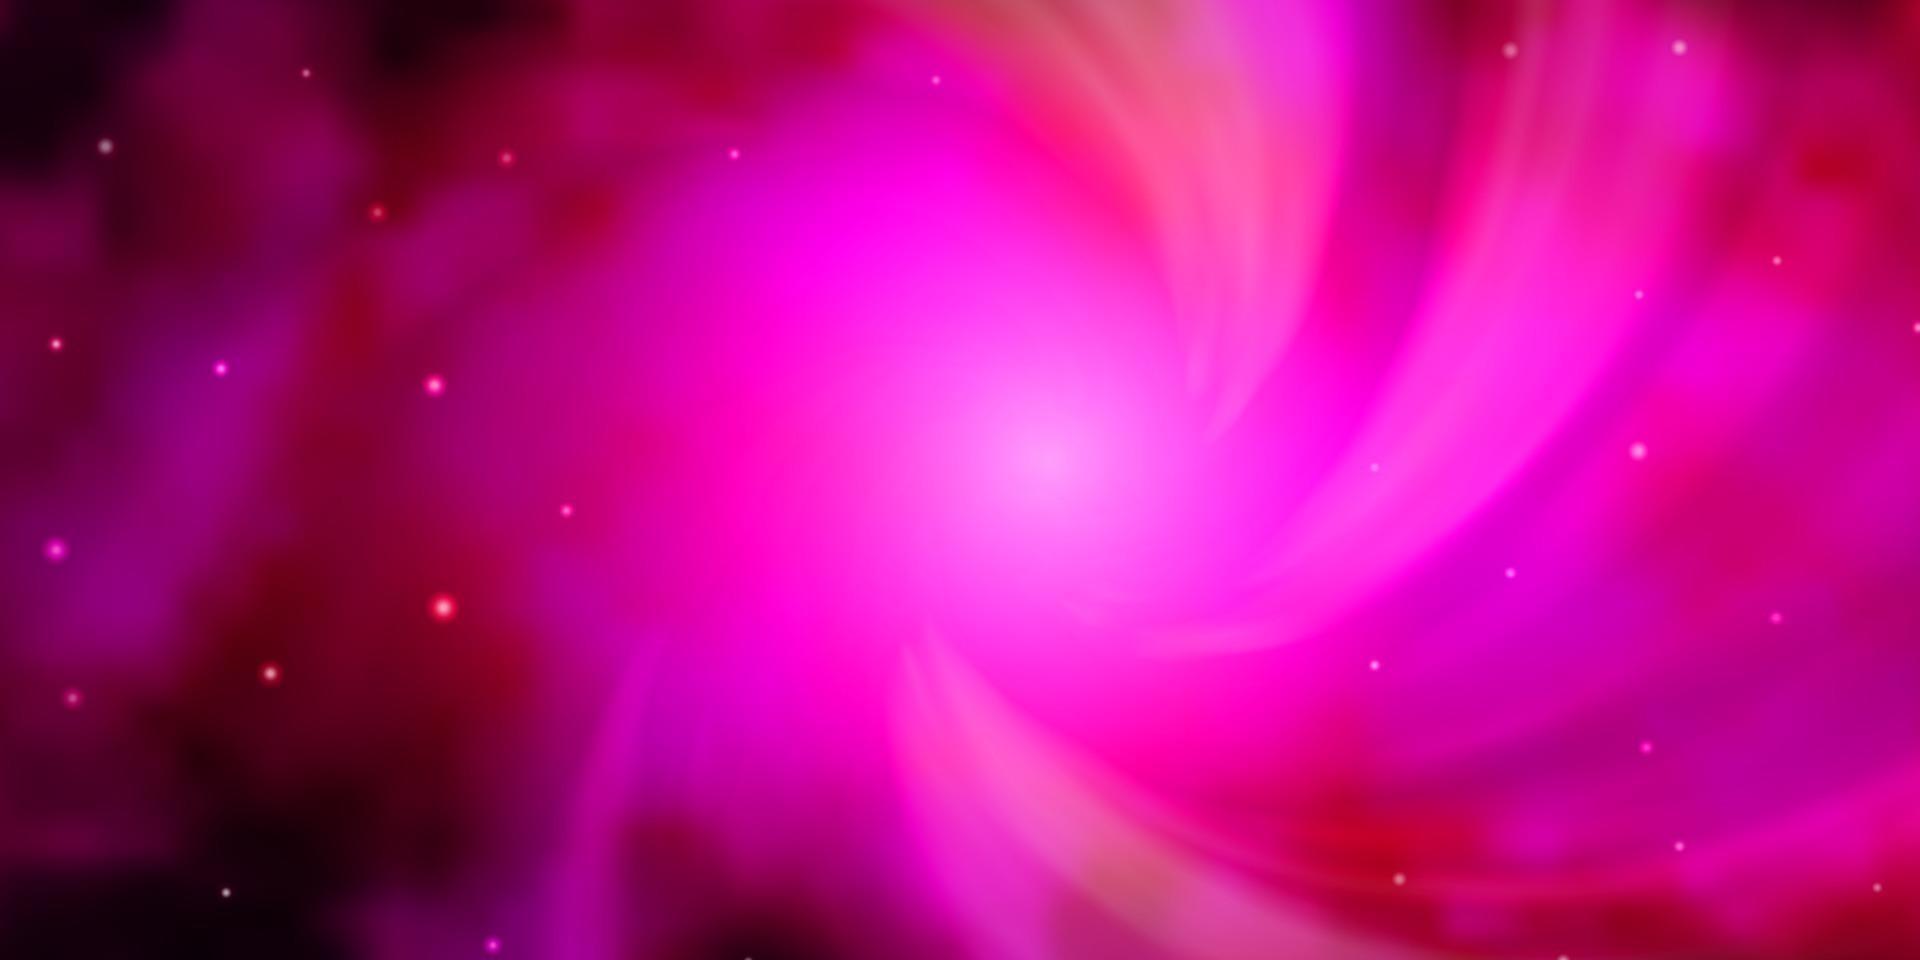 padrão de vetor rosa escuro com estrelas abstratas.